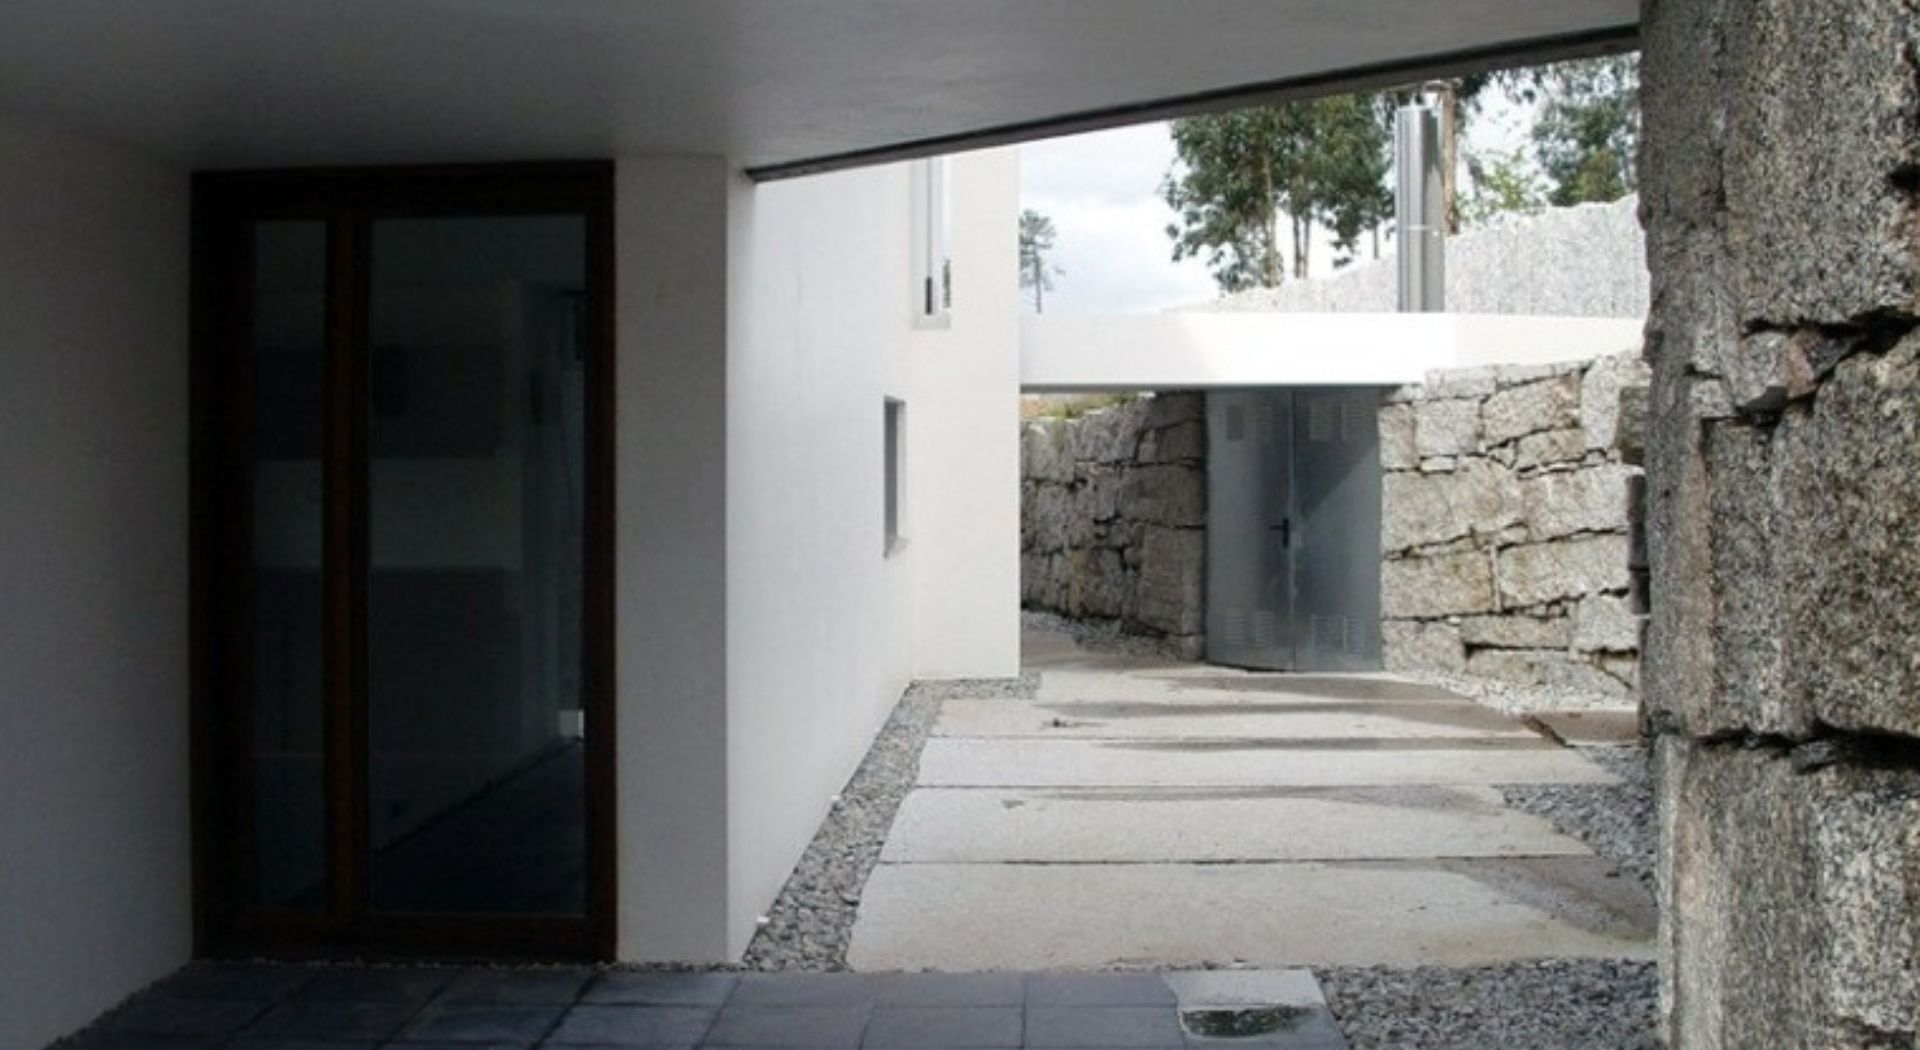 Arquitecto Villagarcía de Arousa vista exterior efecto tunel